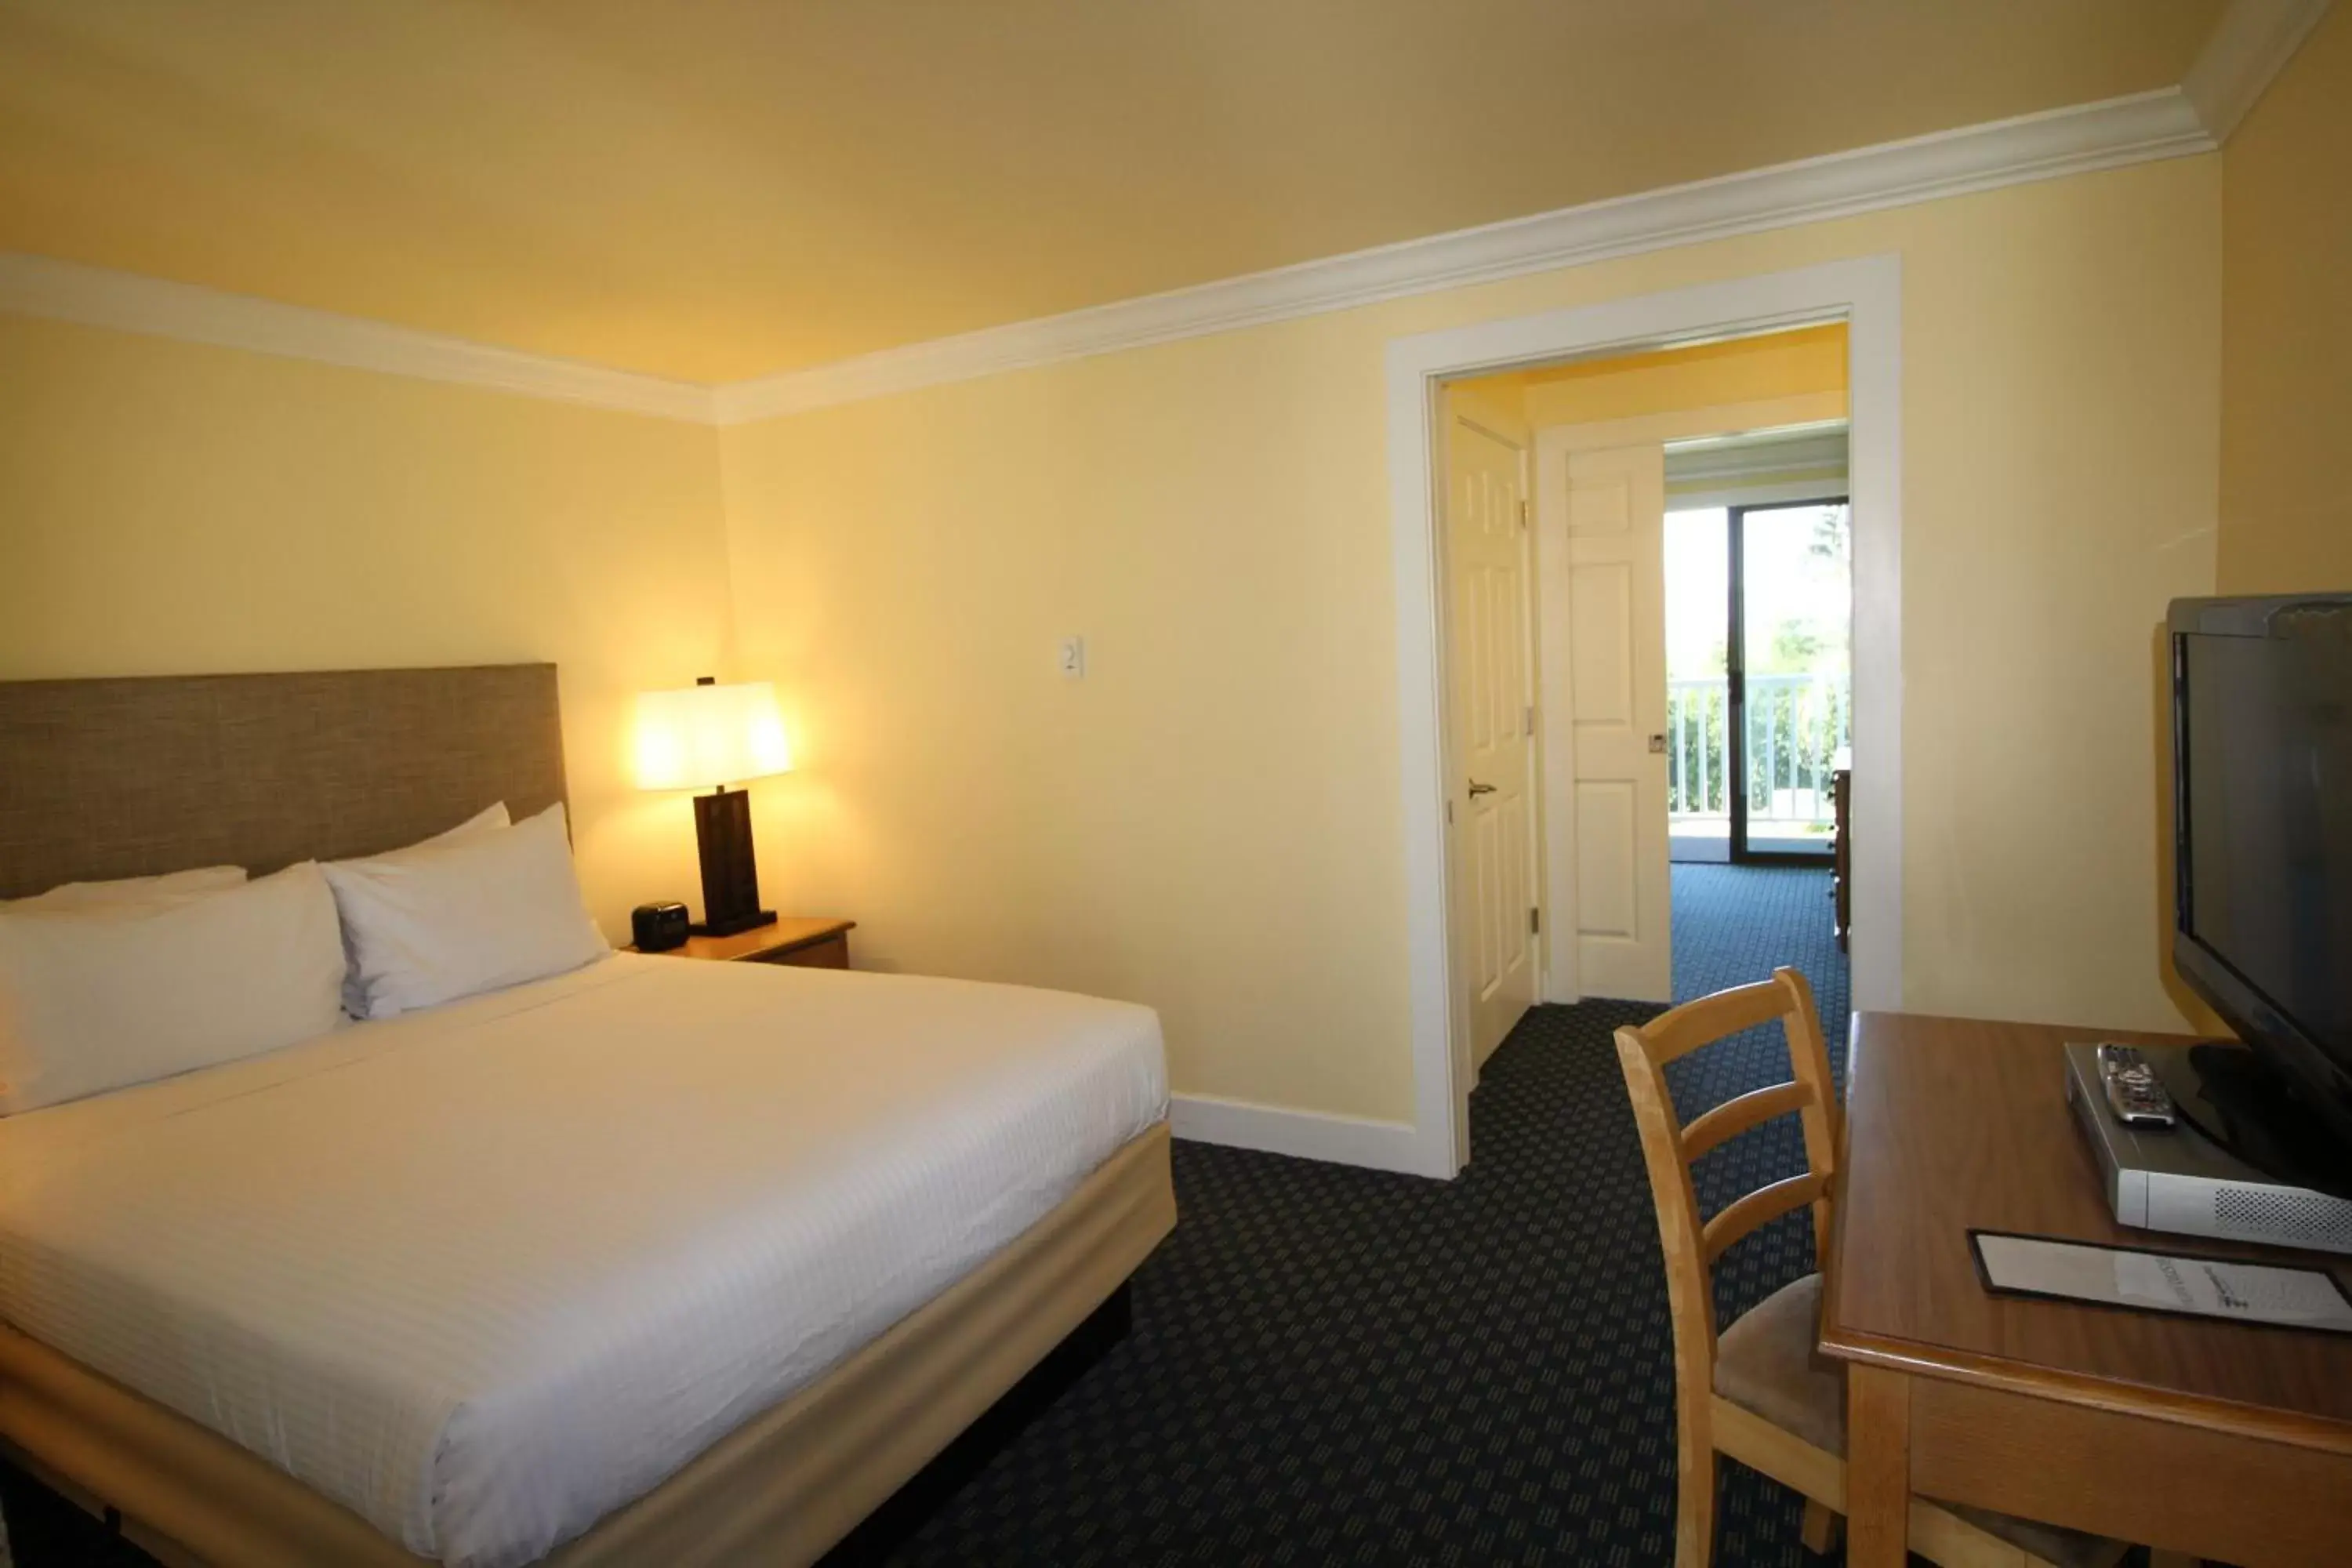 Bed, Room Photo in Anacortes Ship Harbor Inn